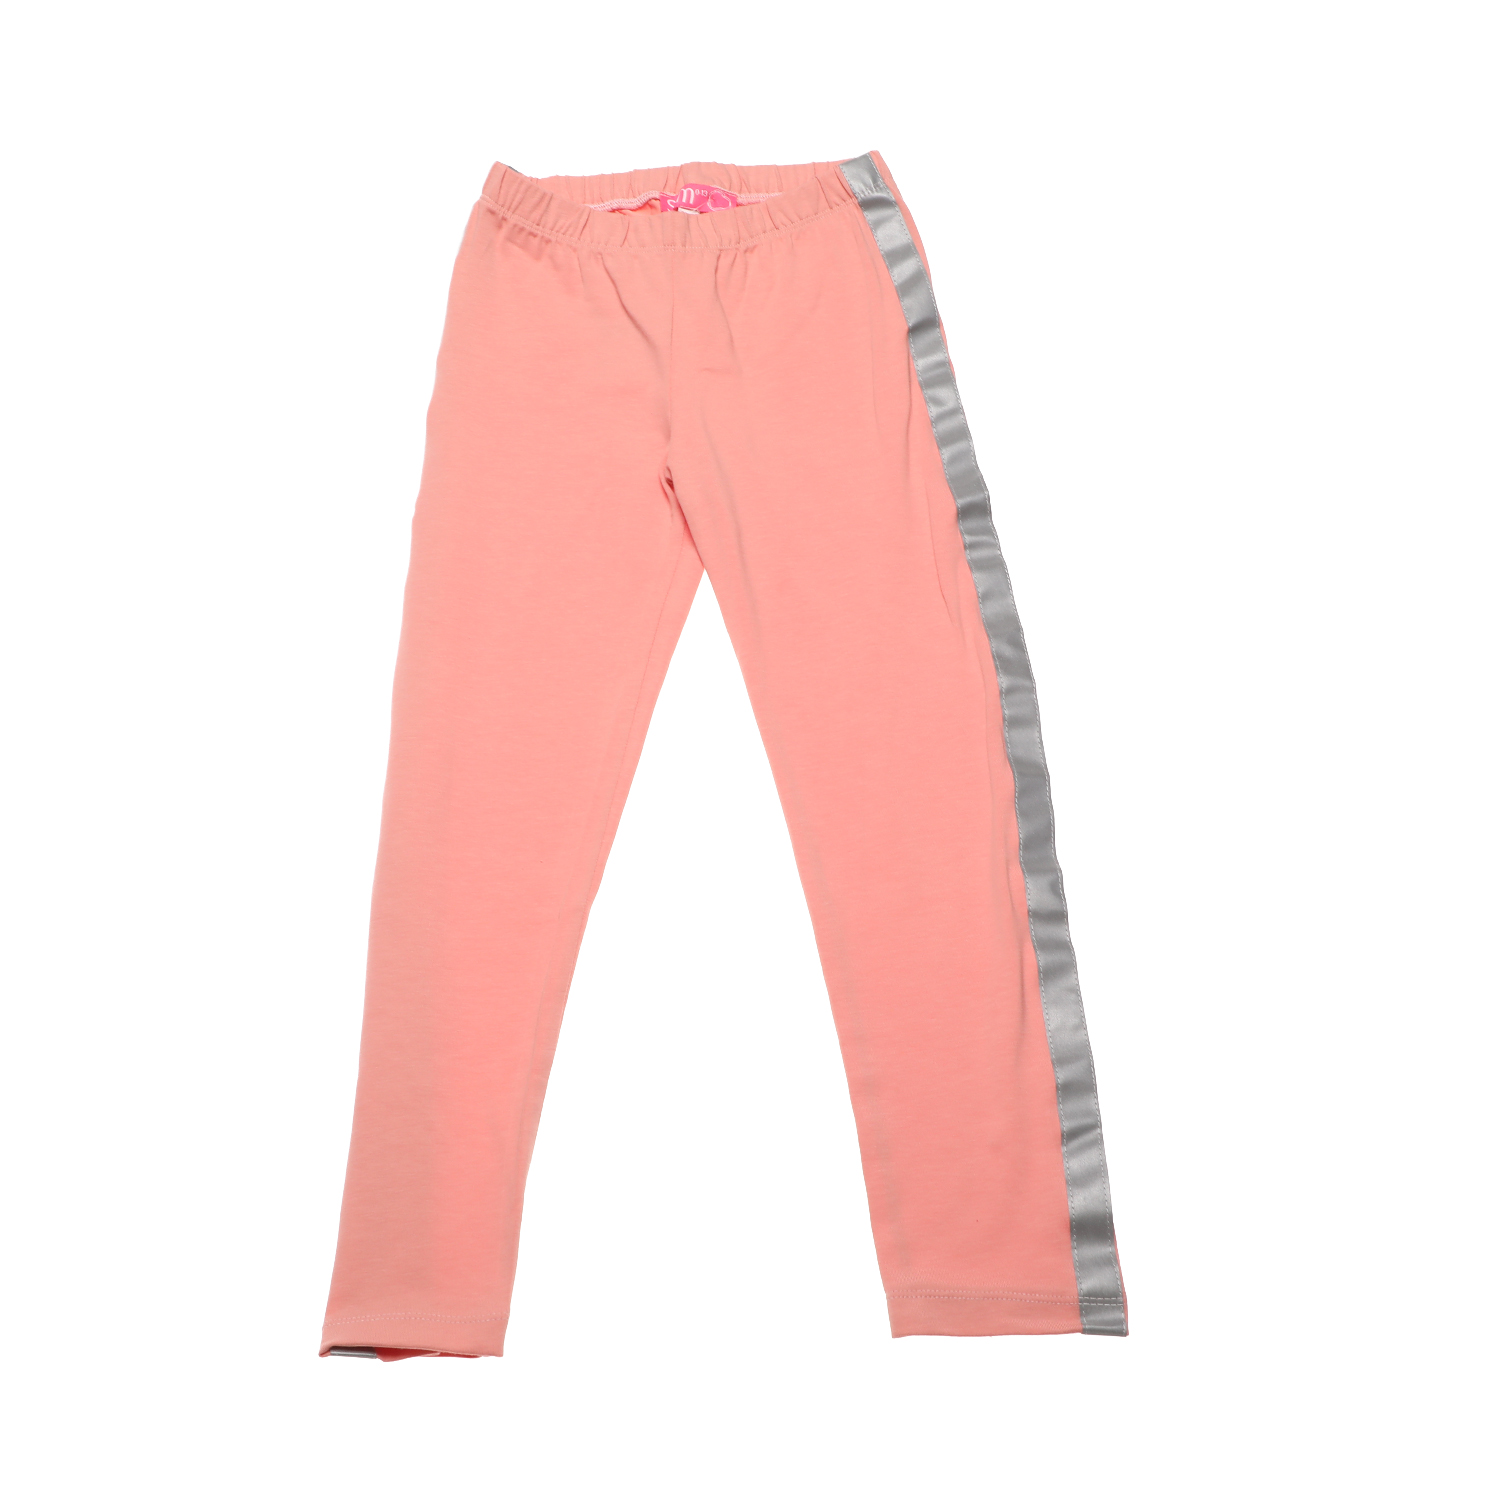 Παιδικά/Girls/Ρούχα/Παντελόνια SAM 0-13 - Παιδικό κολάν SAM 0-13 ροζ ασημί